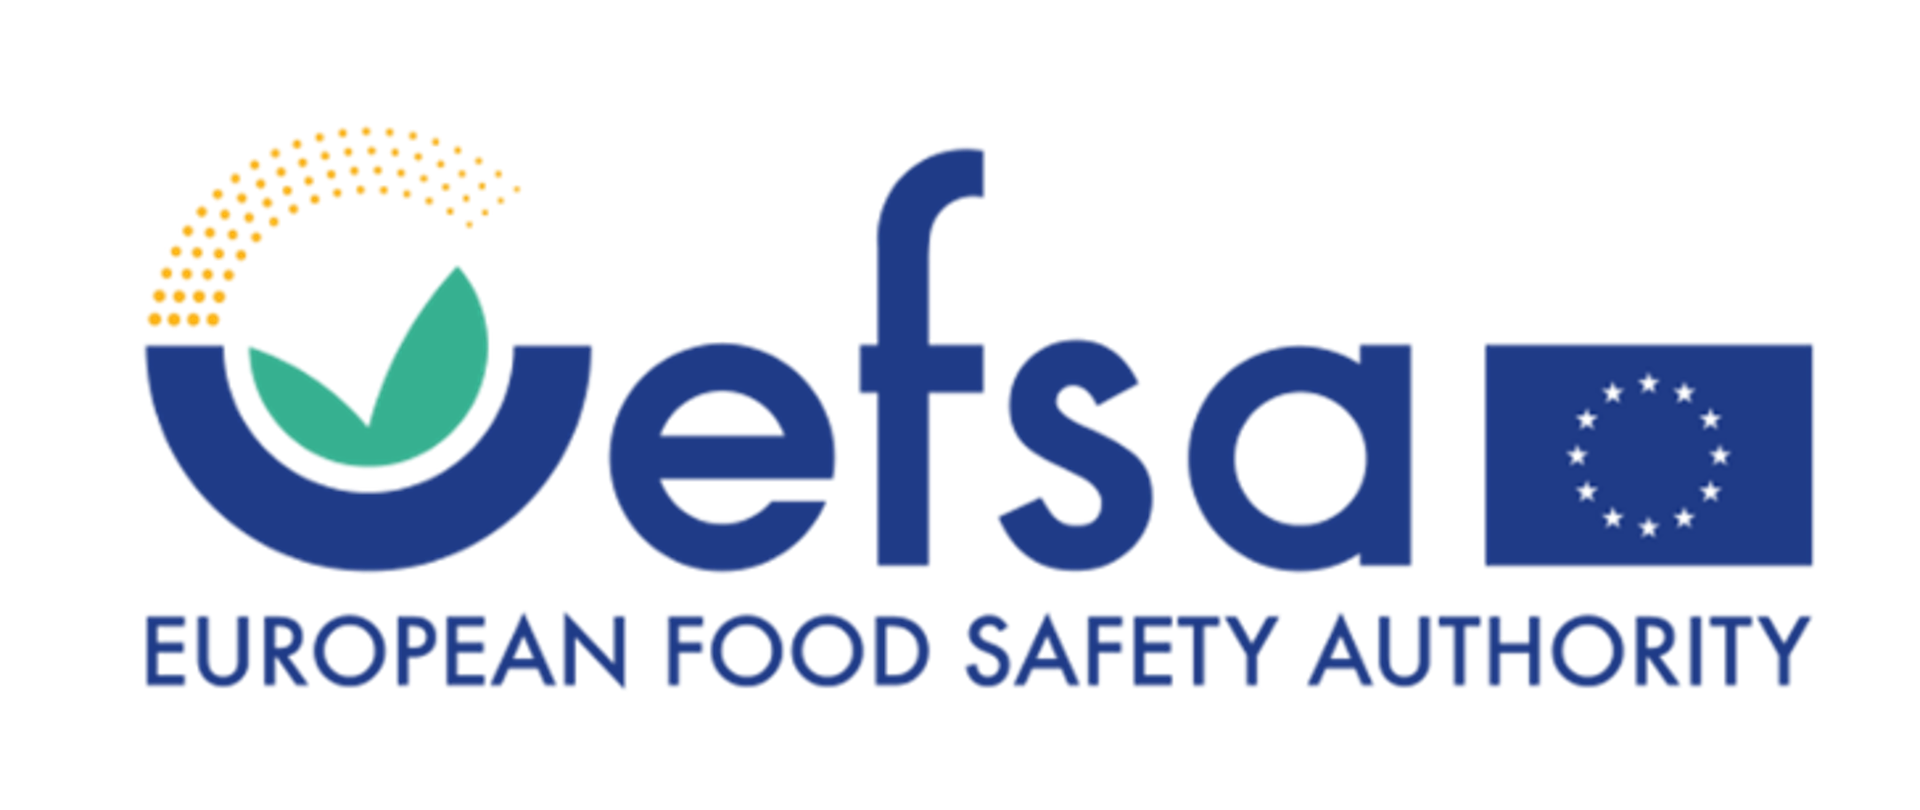 Logo napis efsa pod nim EUROPENA FOOD SAFETY AUTHORUTY